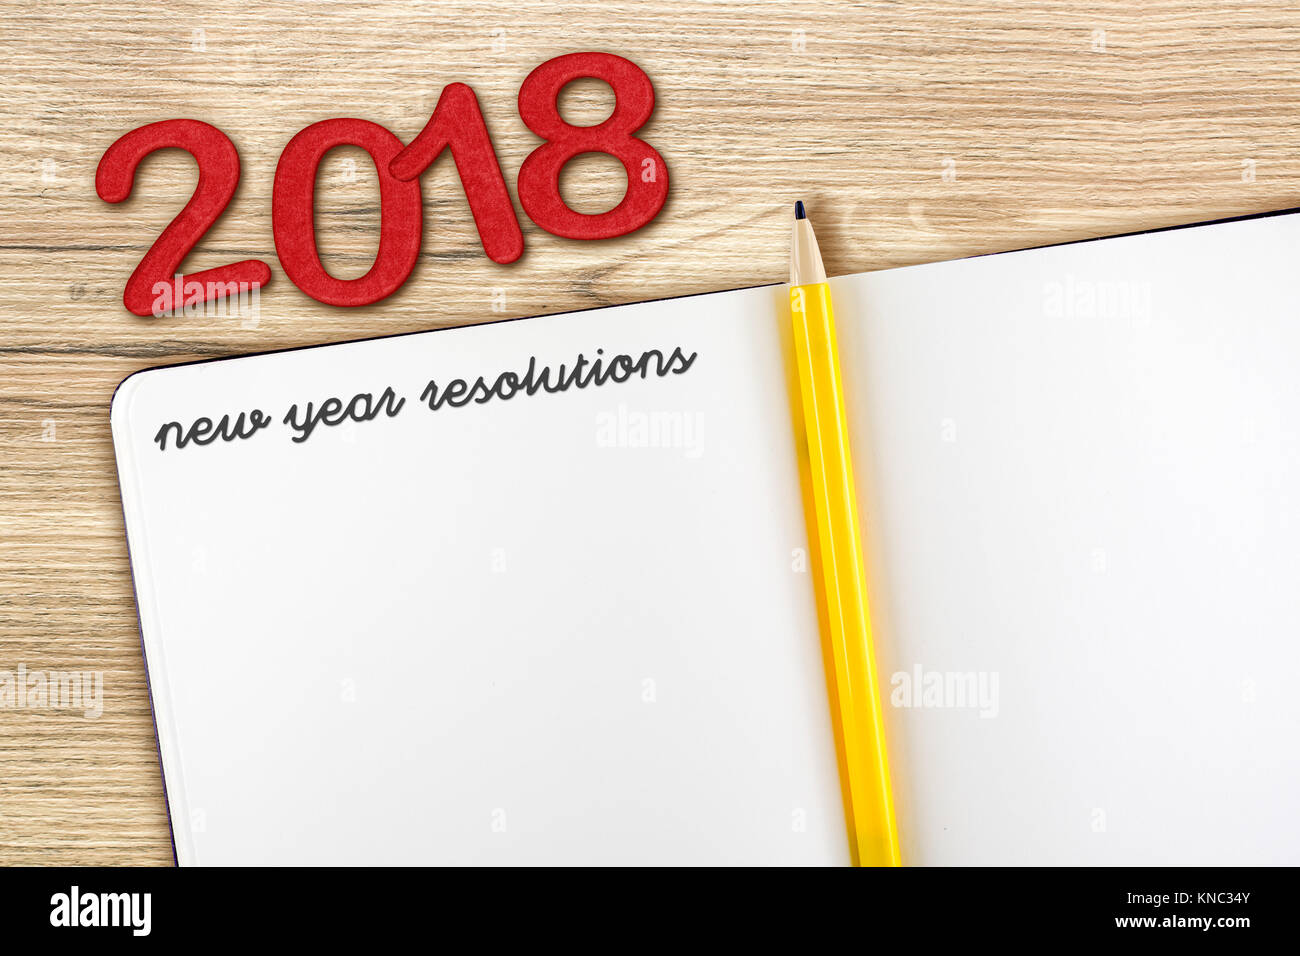 Ansicht von oben in 2018 neues Jahr Auflösung mit leeren öffnen Notebook und gelben Bleistift auf hölzernen Tischplatte, Mock up für ihren Inhalt oder Design Stockfoto